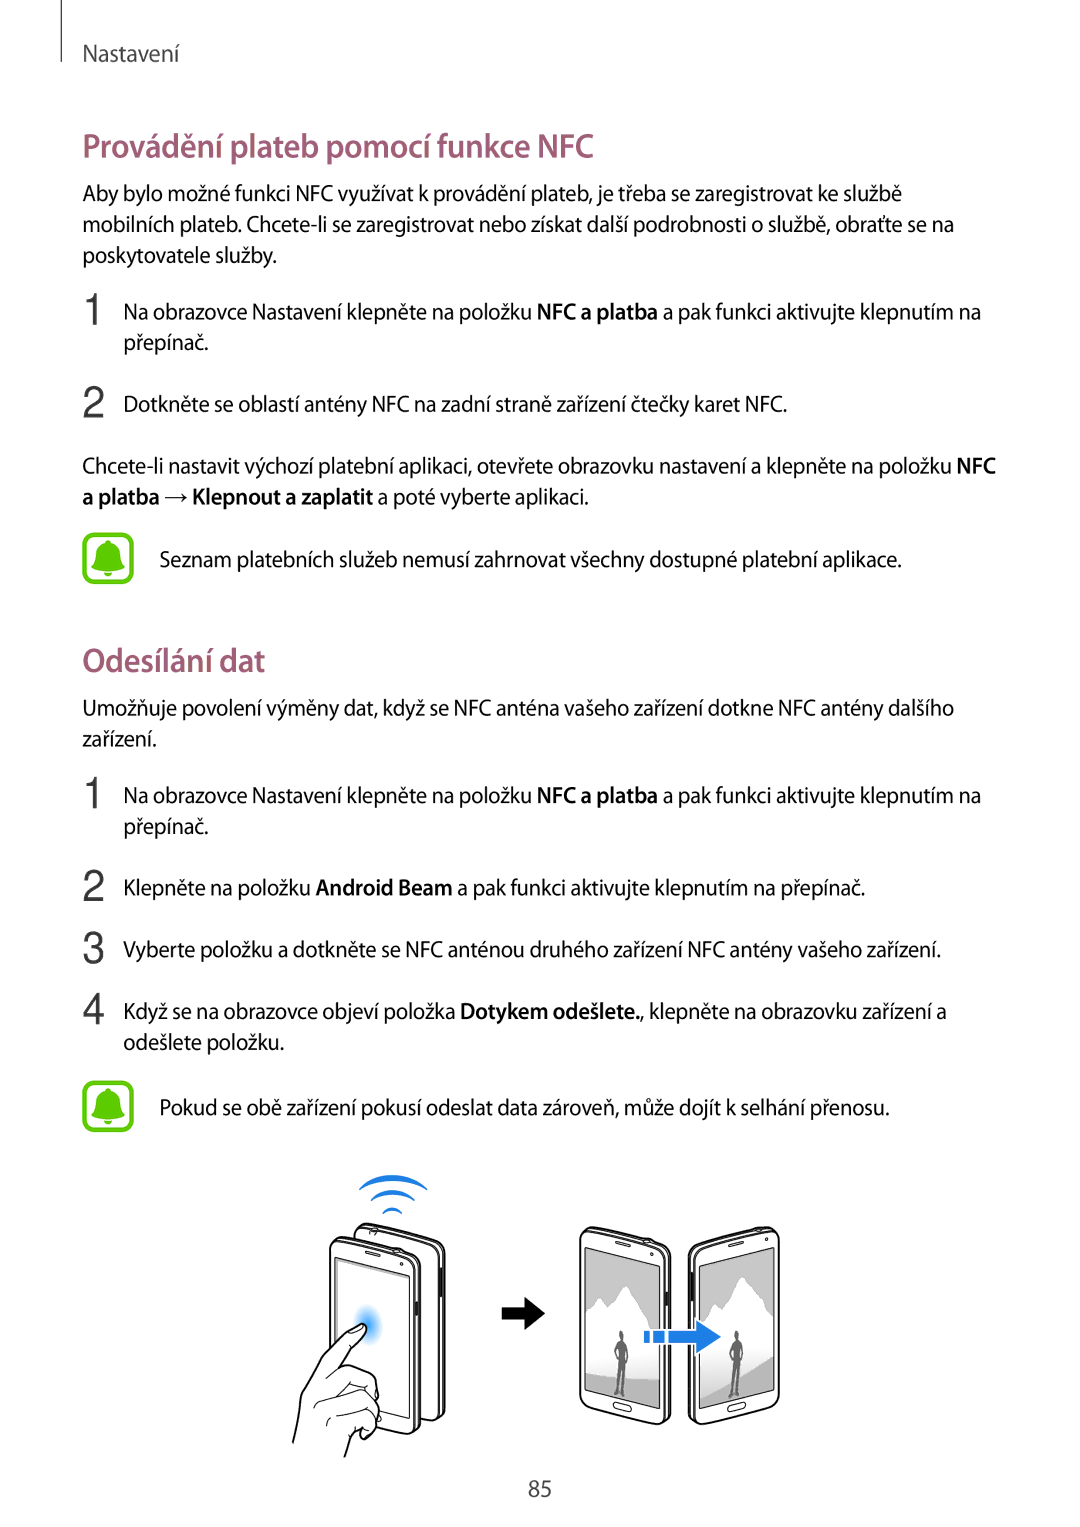 Samsung SM-G903FZSAETL manual Provádění plateb pomocí funkce NFC, Odesílání dat 